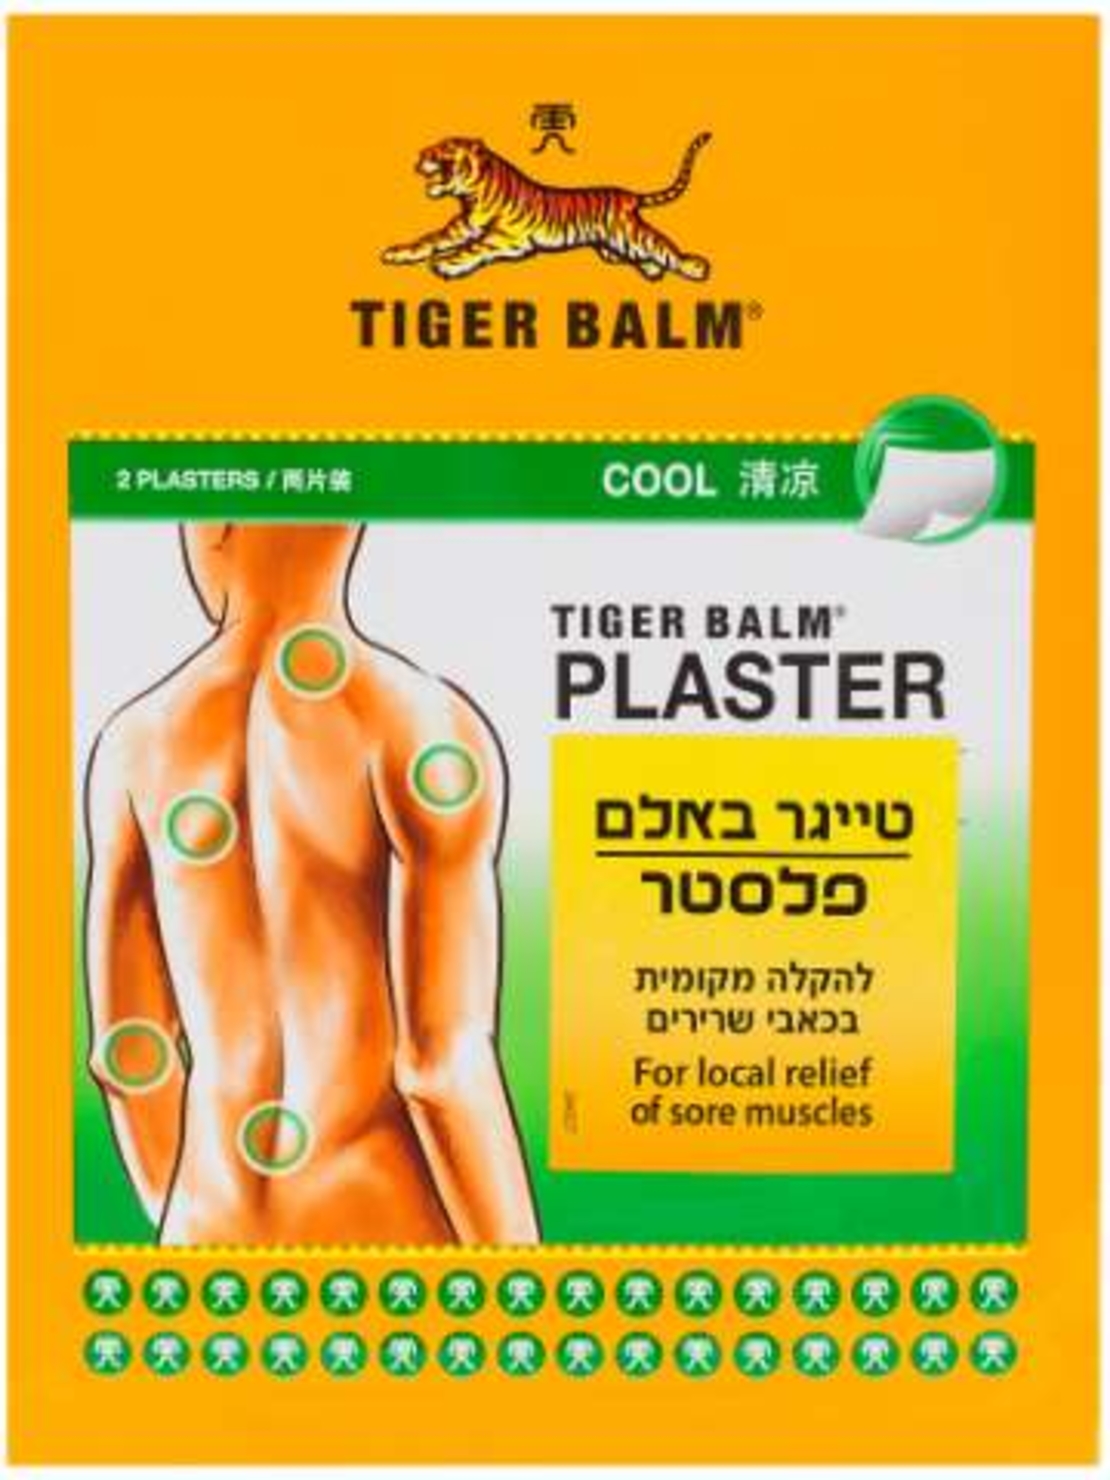 טייגר באלם פלסטר - להקלה בכאבי שרירים Tiger Plaster